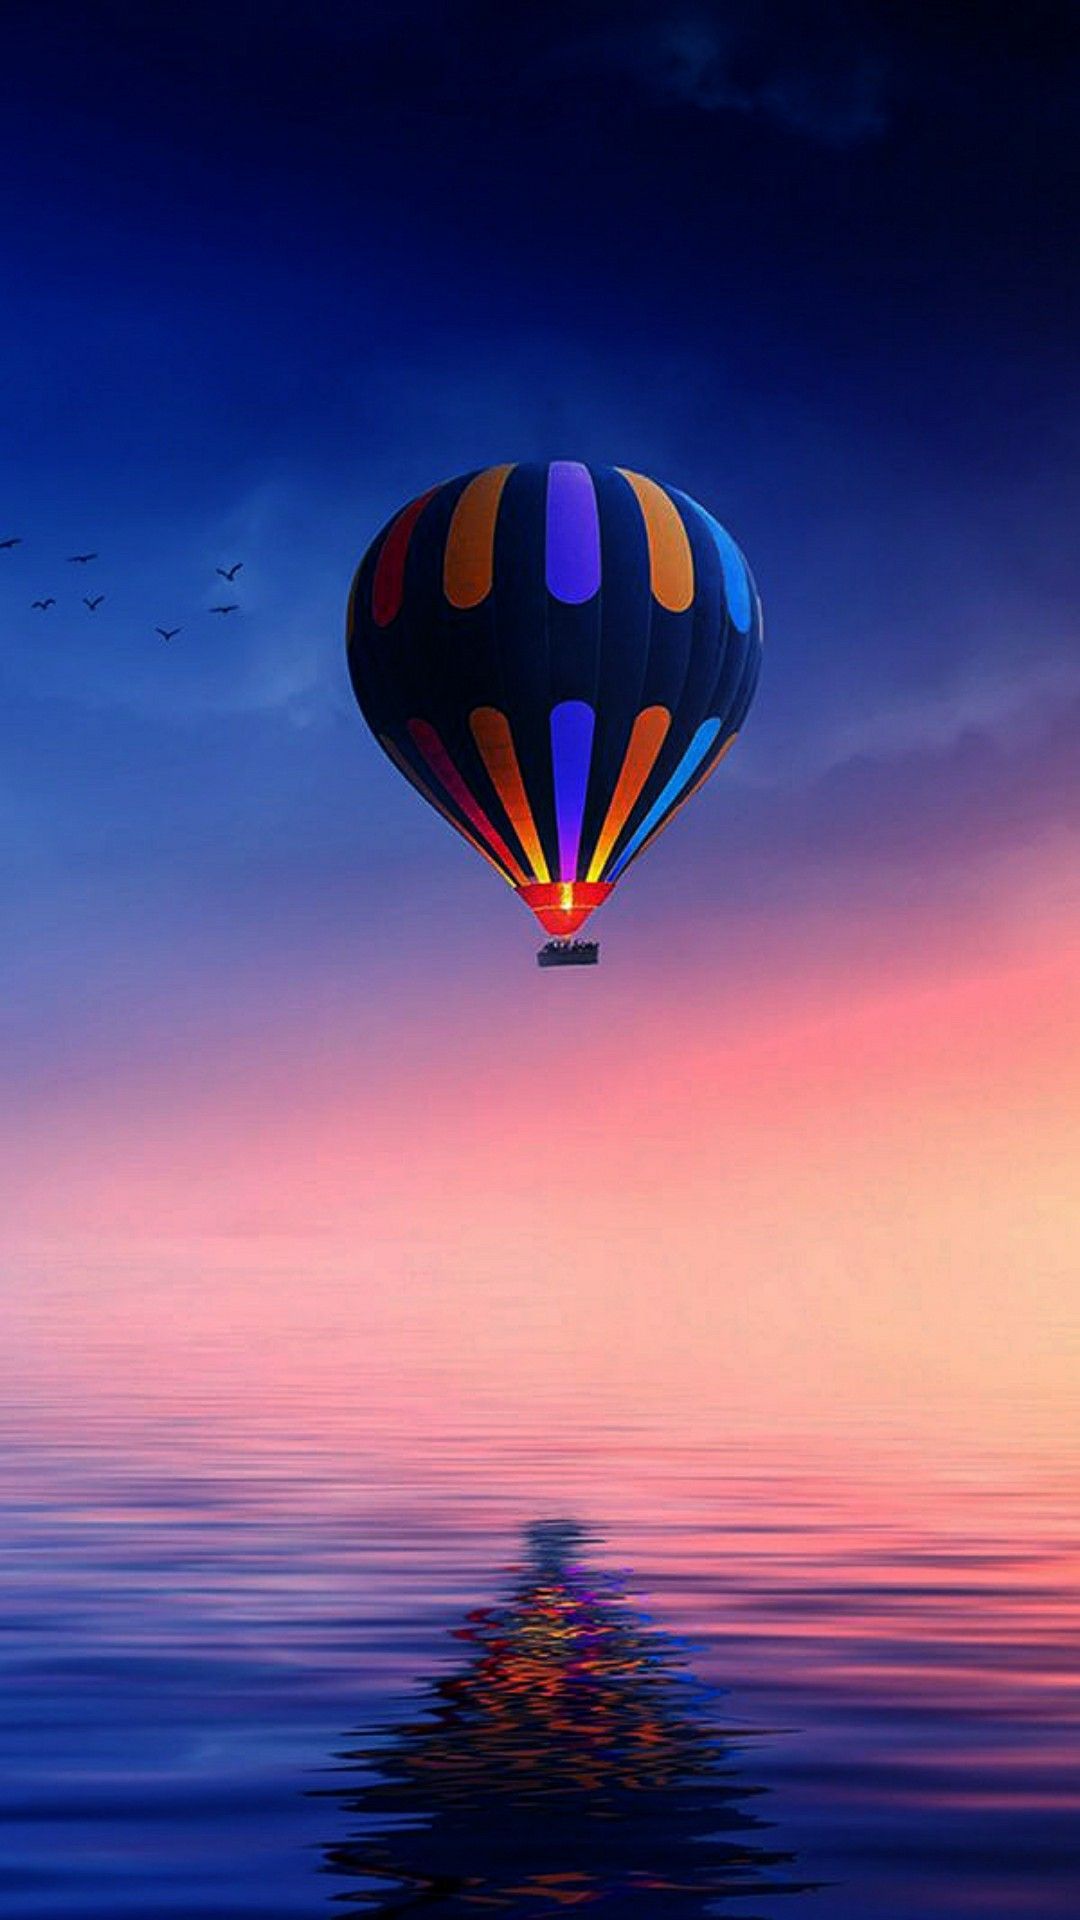 Hot air balloon wallpaper. Air balloon, Hot air balloon, Wallpaper